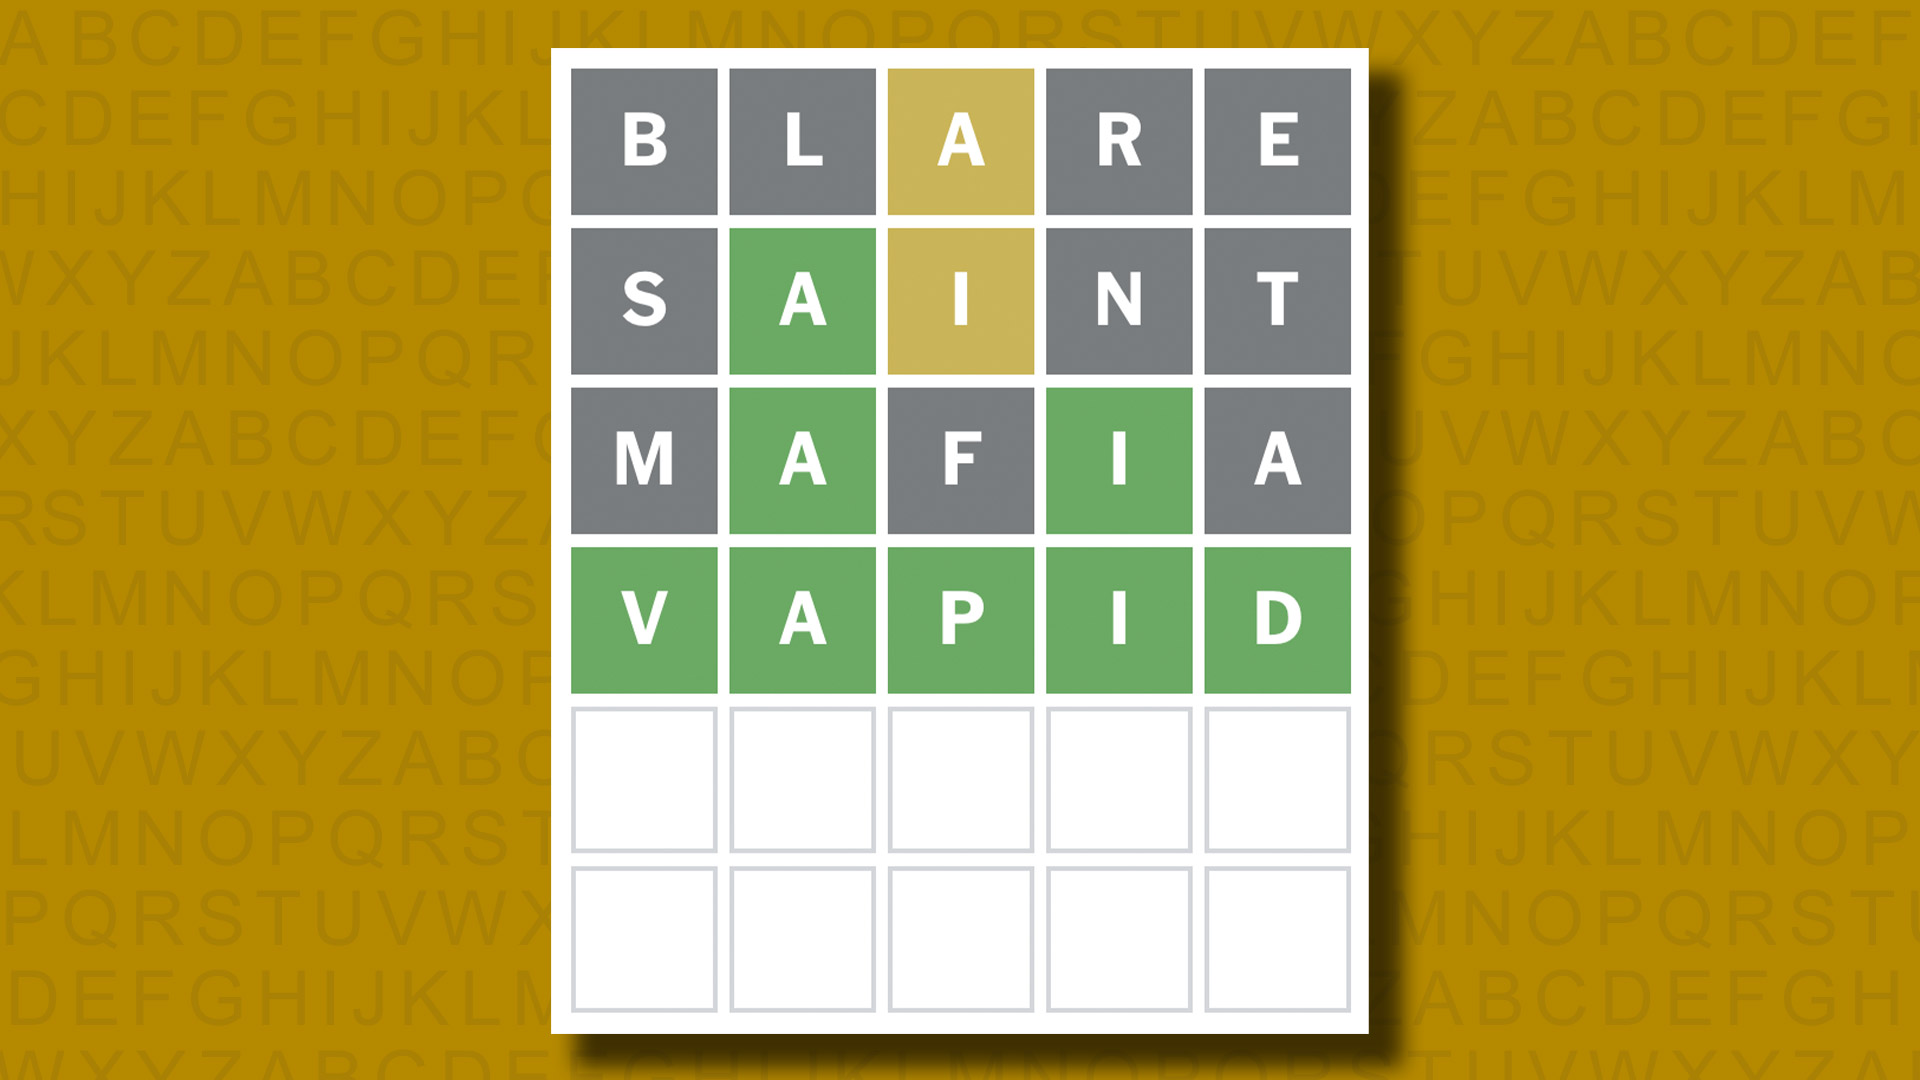 Ответ в формате Word для игры 1042 на желтом фоне